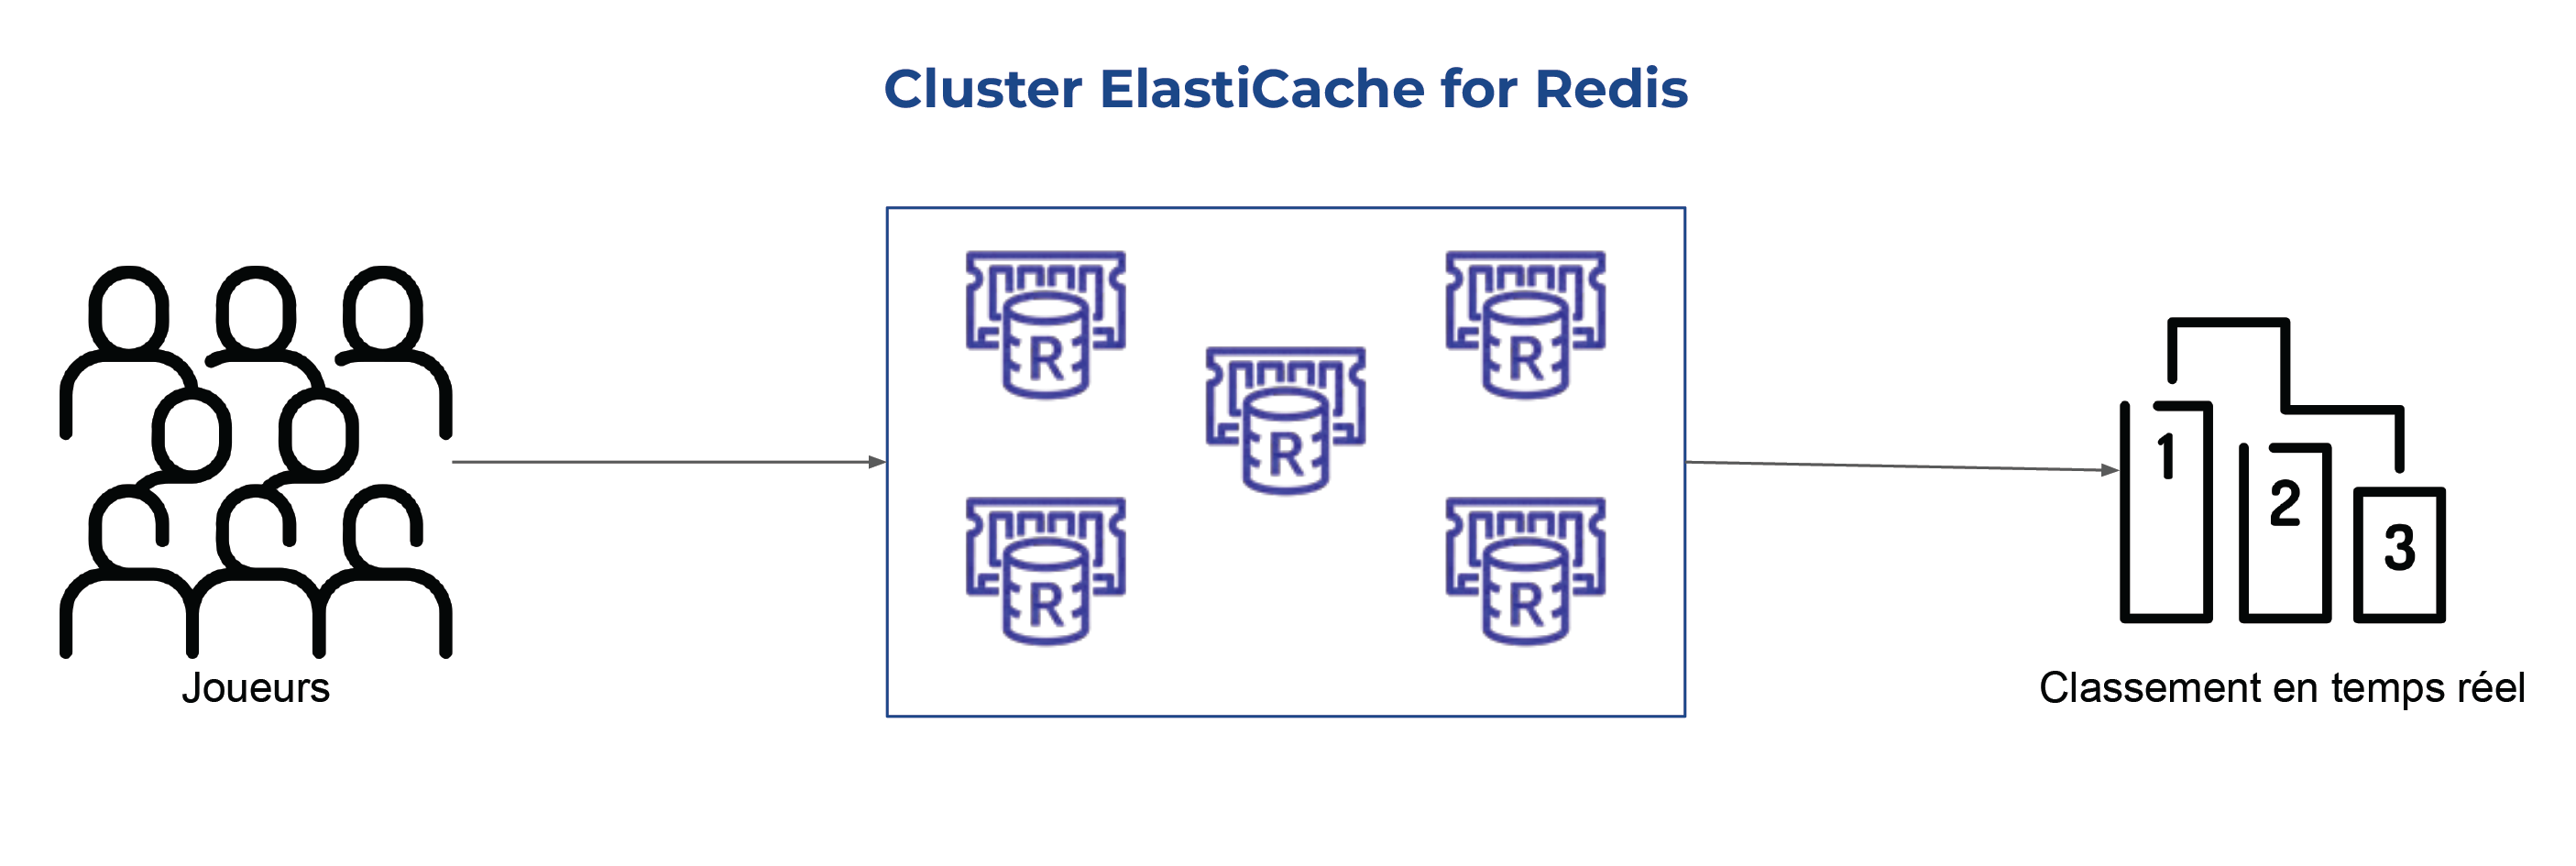 Un chemin mène des joueurs vers Cluster ElastiCache for Redis puis vers Classement en temps réel.